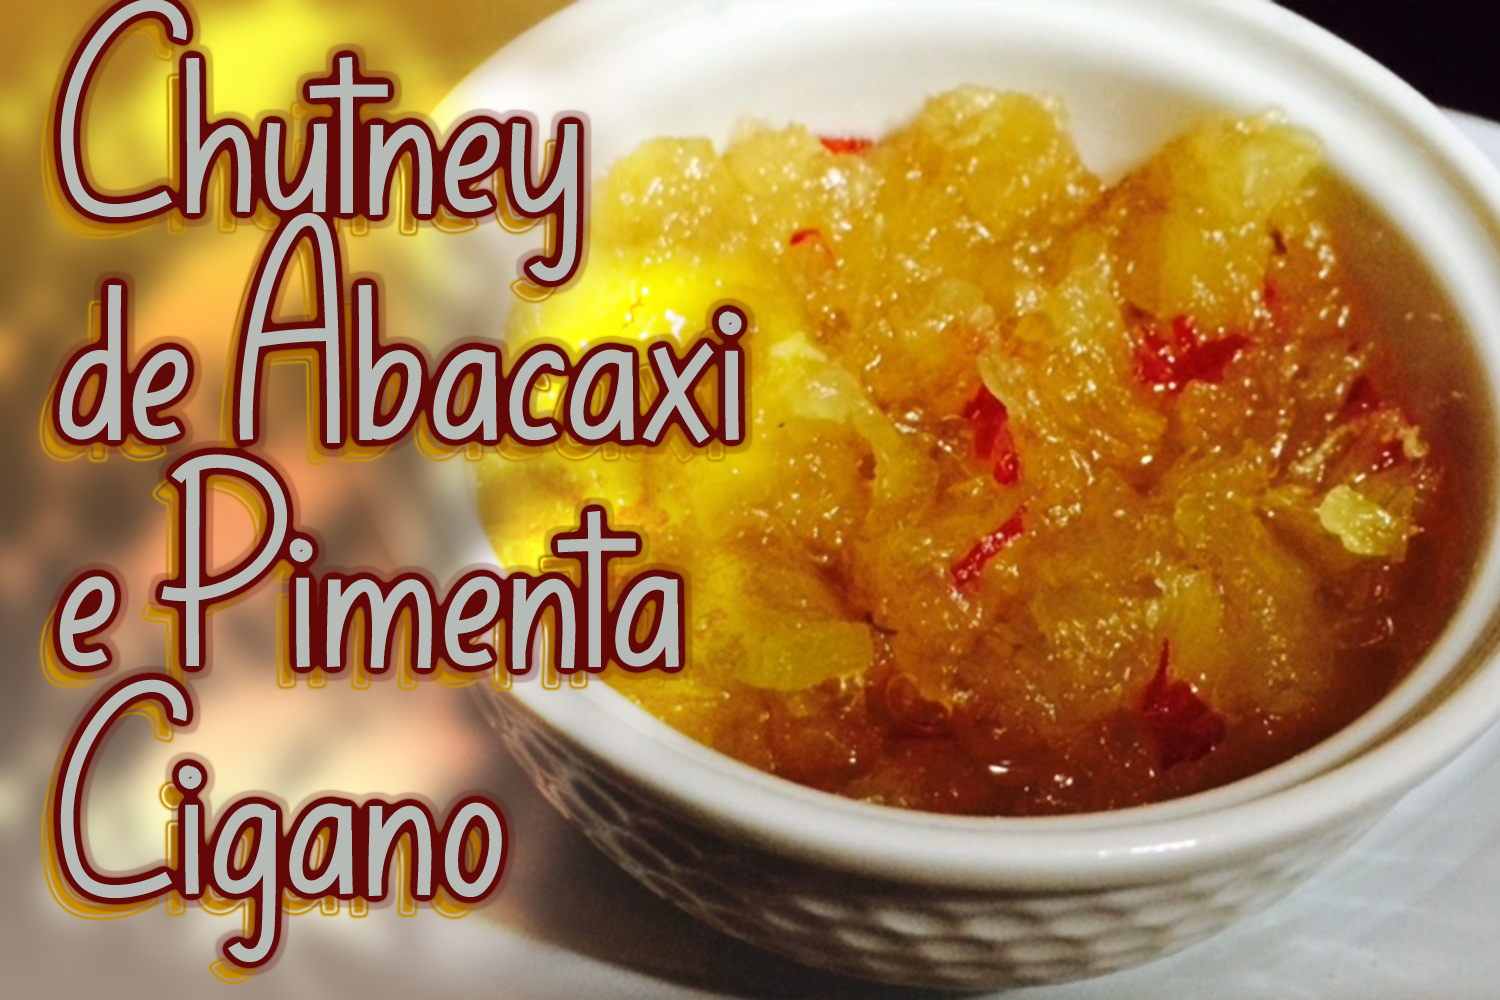 Chutney de Abacaxi e Pimenta Cigano